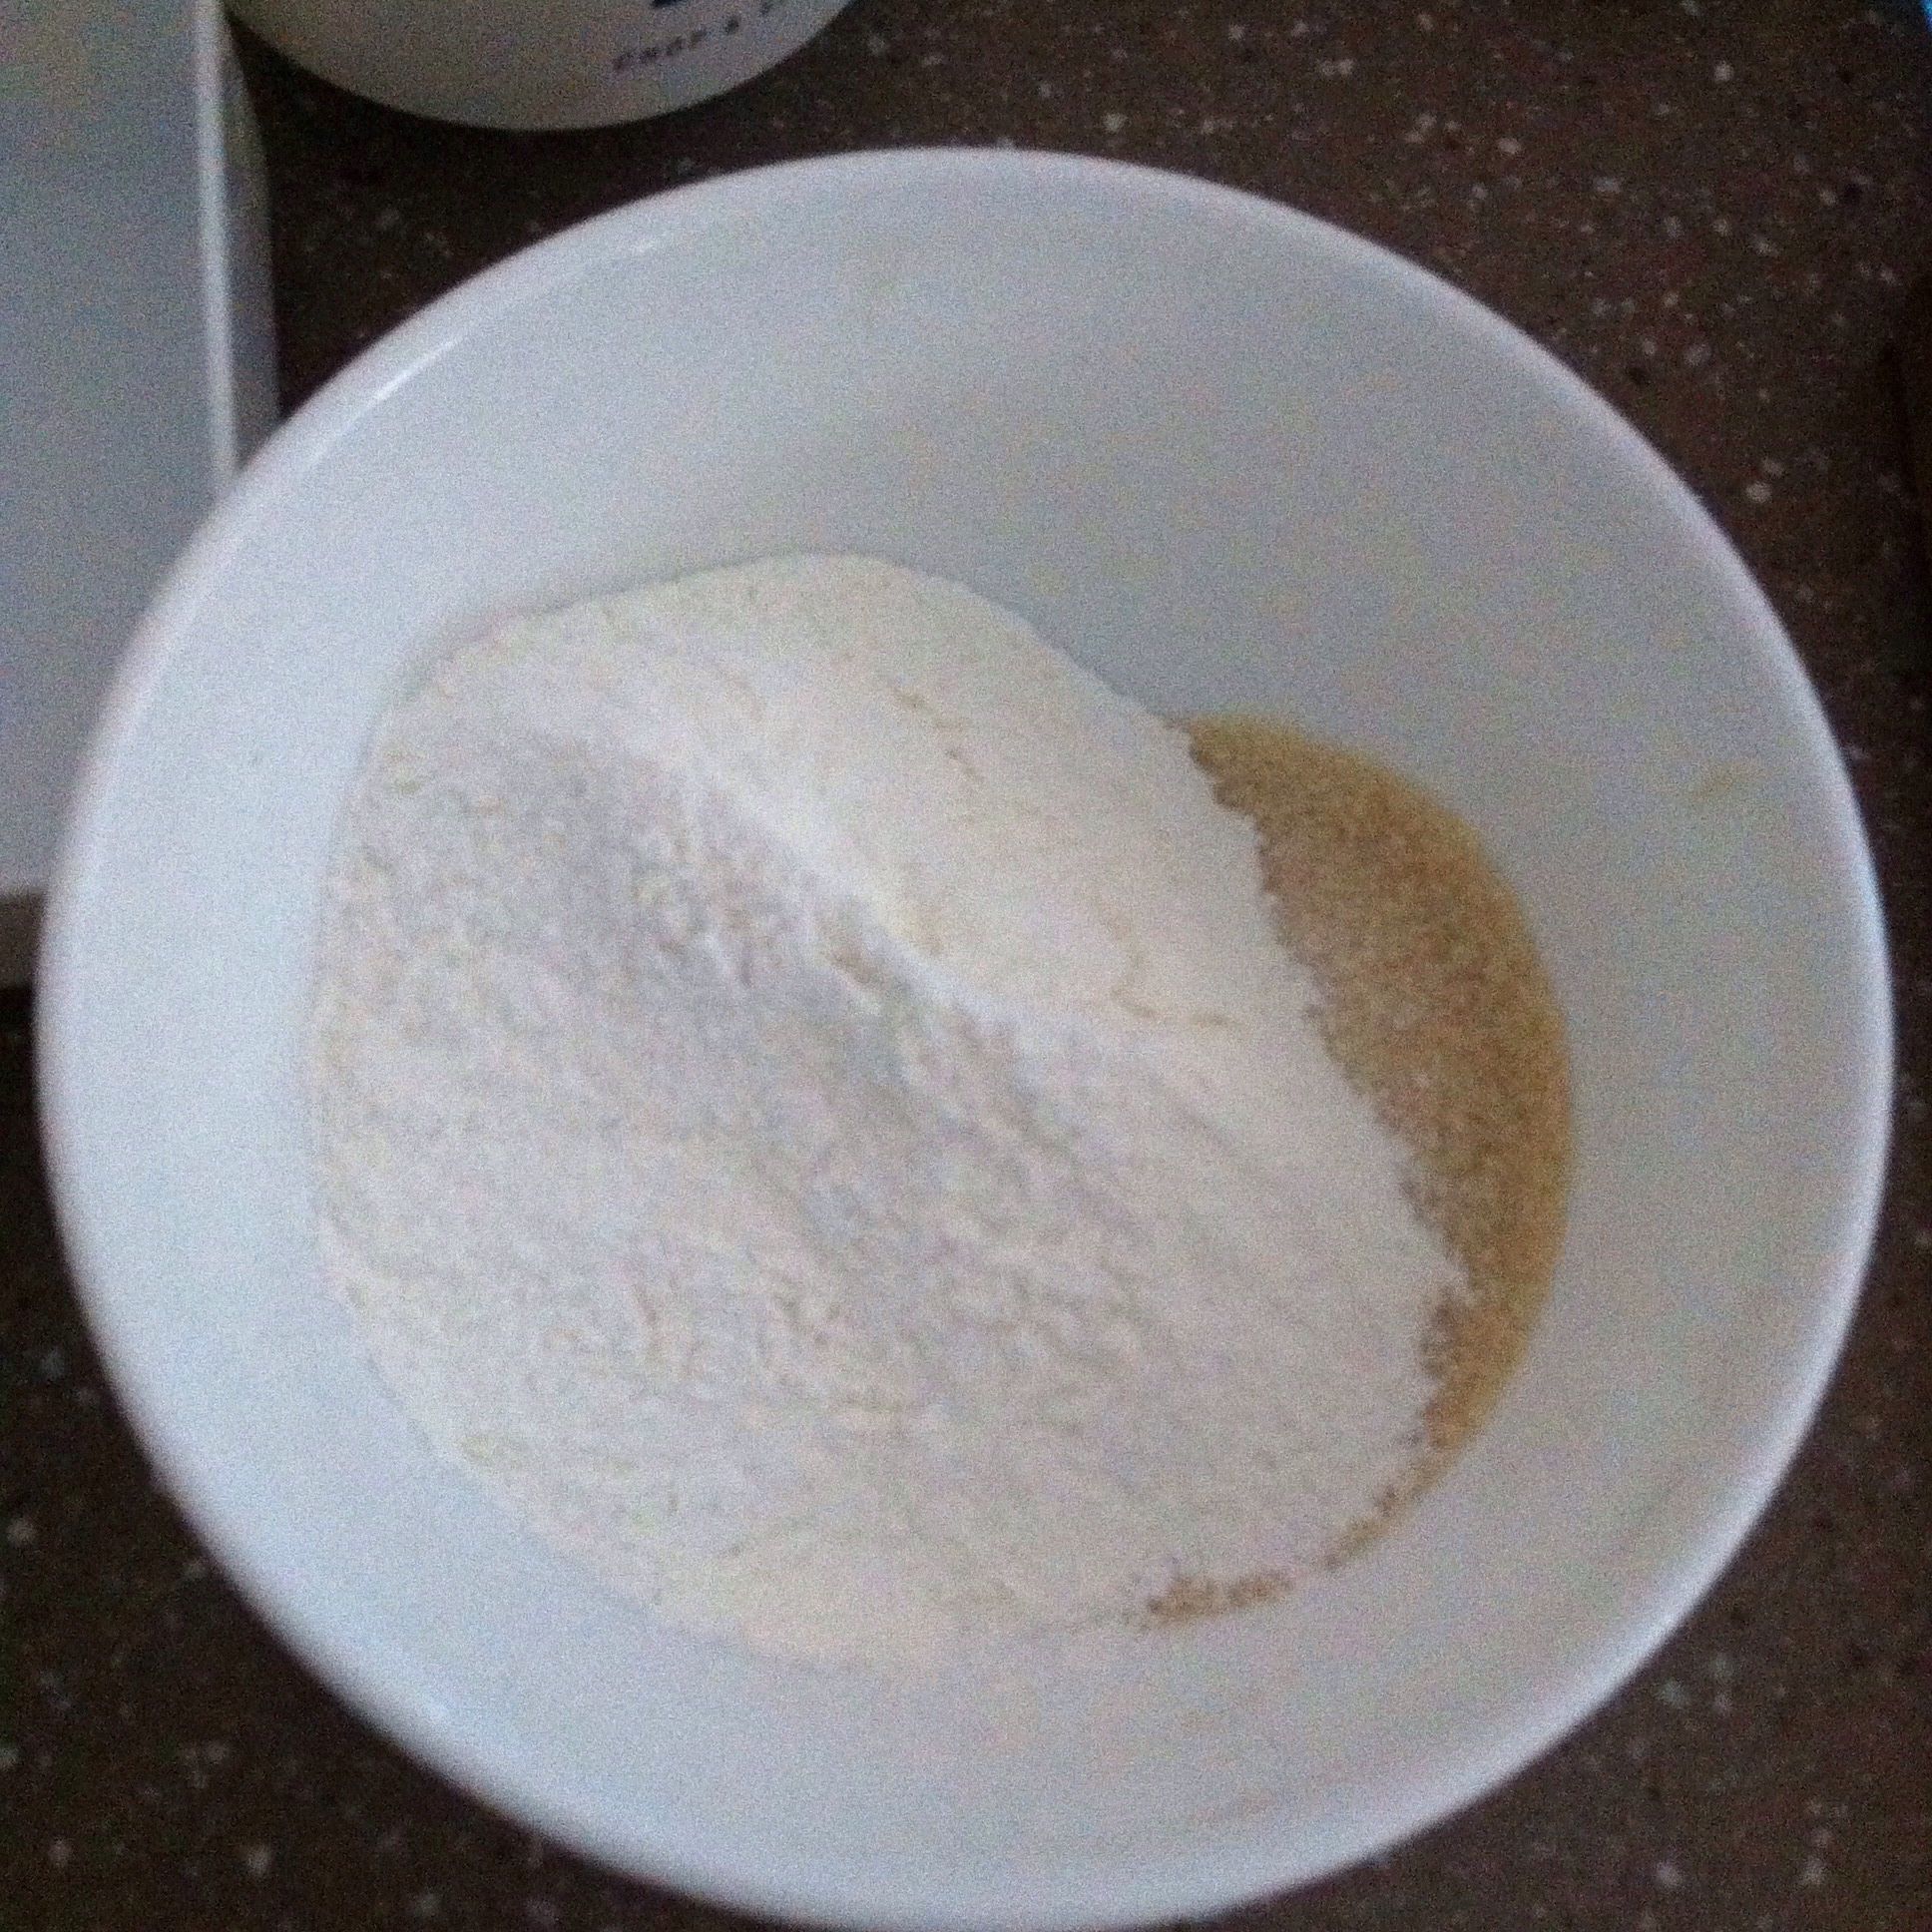 mochi flour